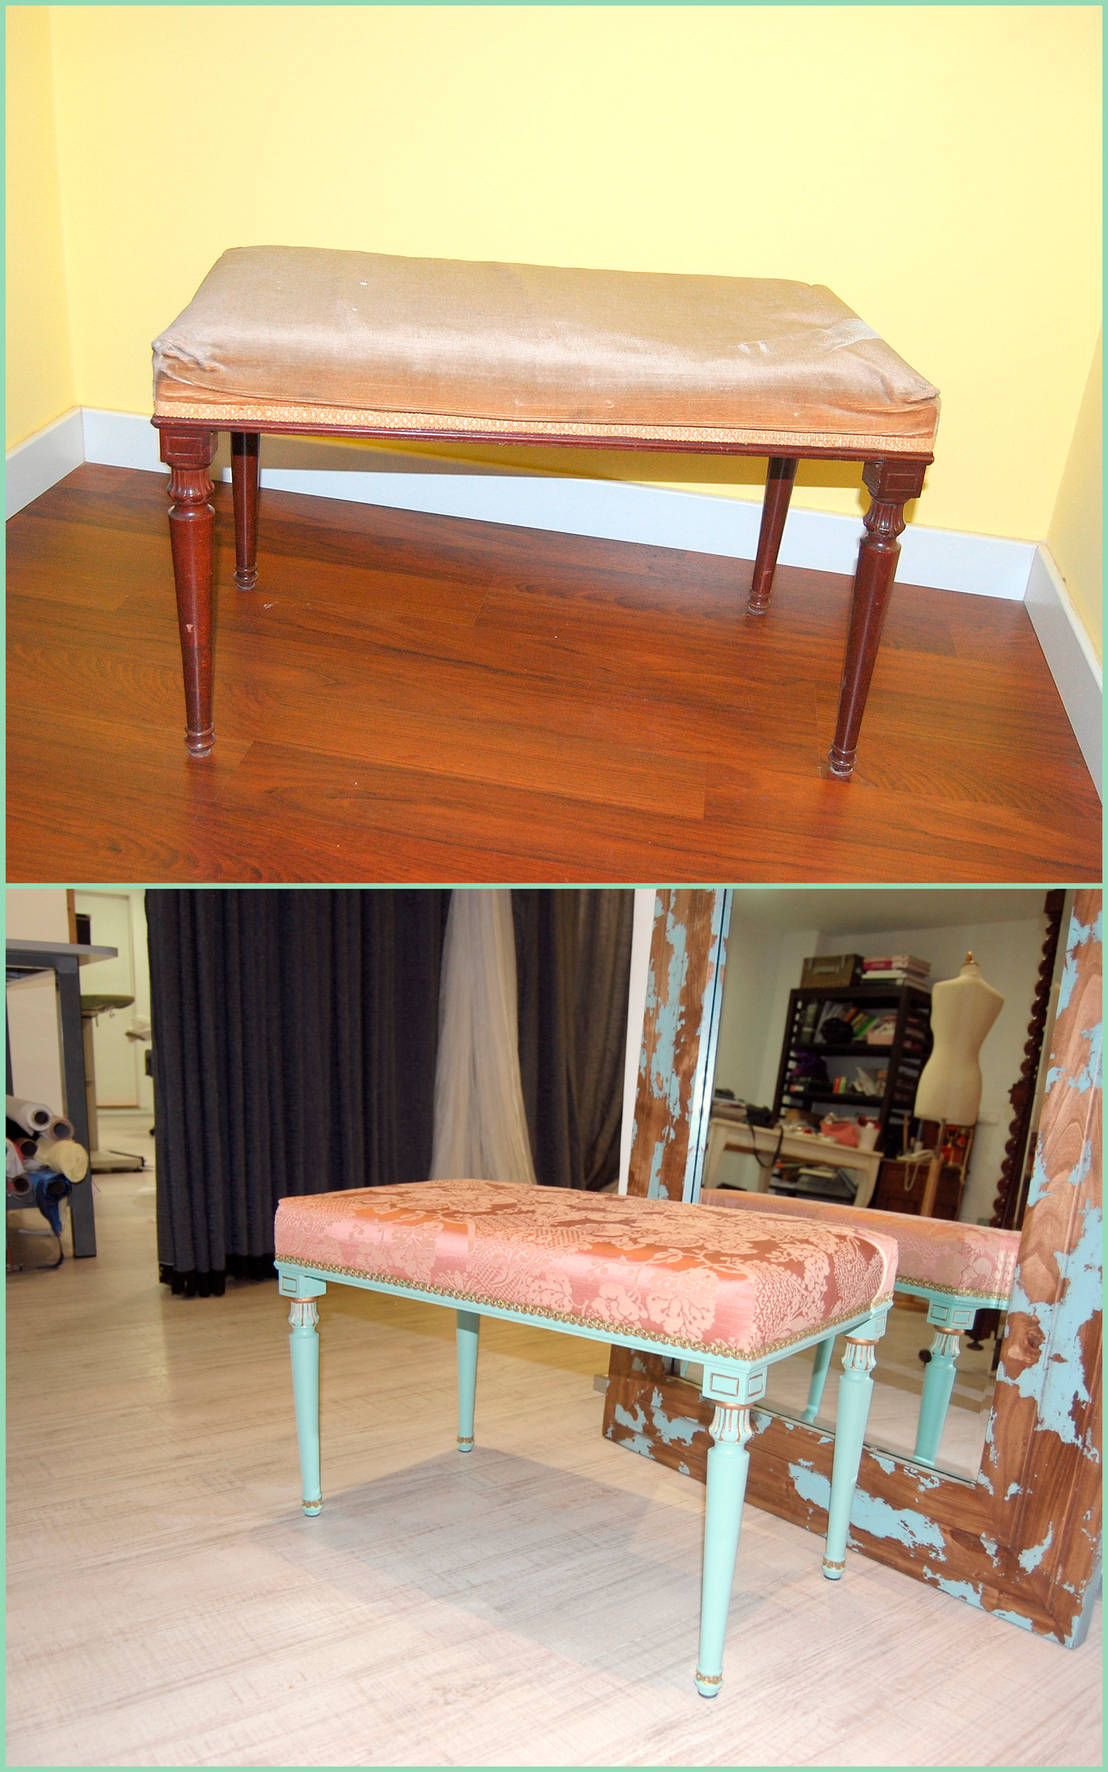 Historia de un mueble: máquina de coser Singer + nuestra restauración -  Amarquimia